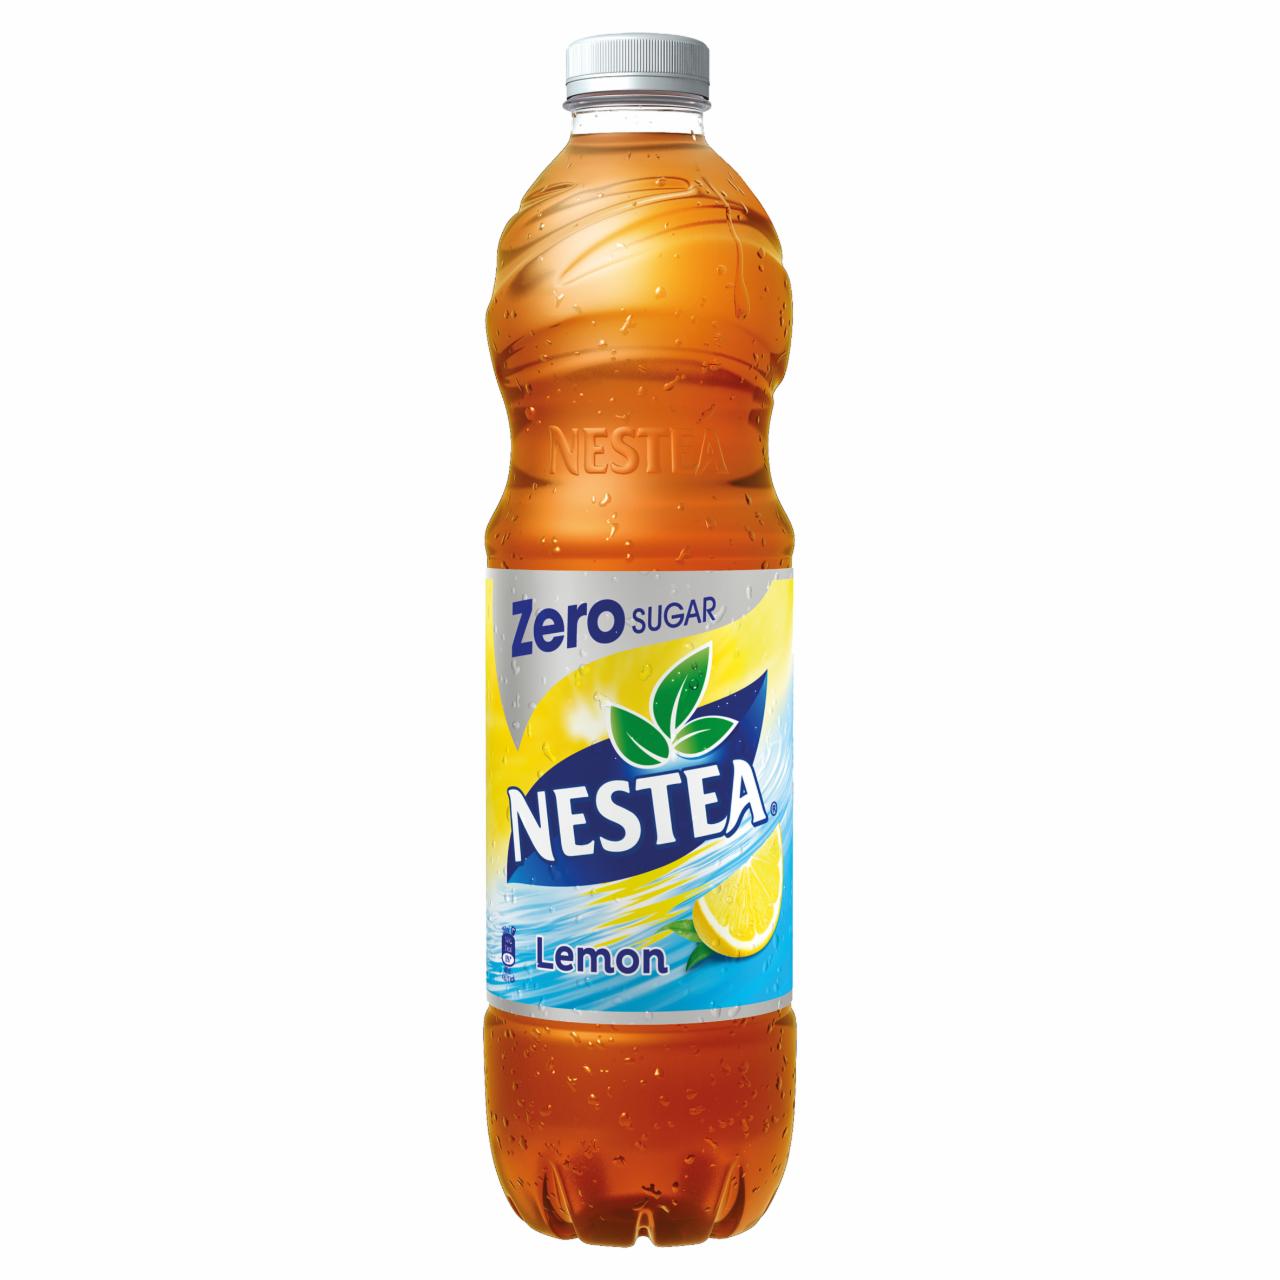 Képek - Nestea Zero citrom ízű cukormentes tea üdítőital édesítőszerekkel 1,5 l